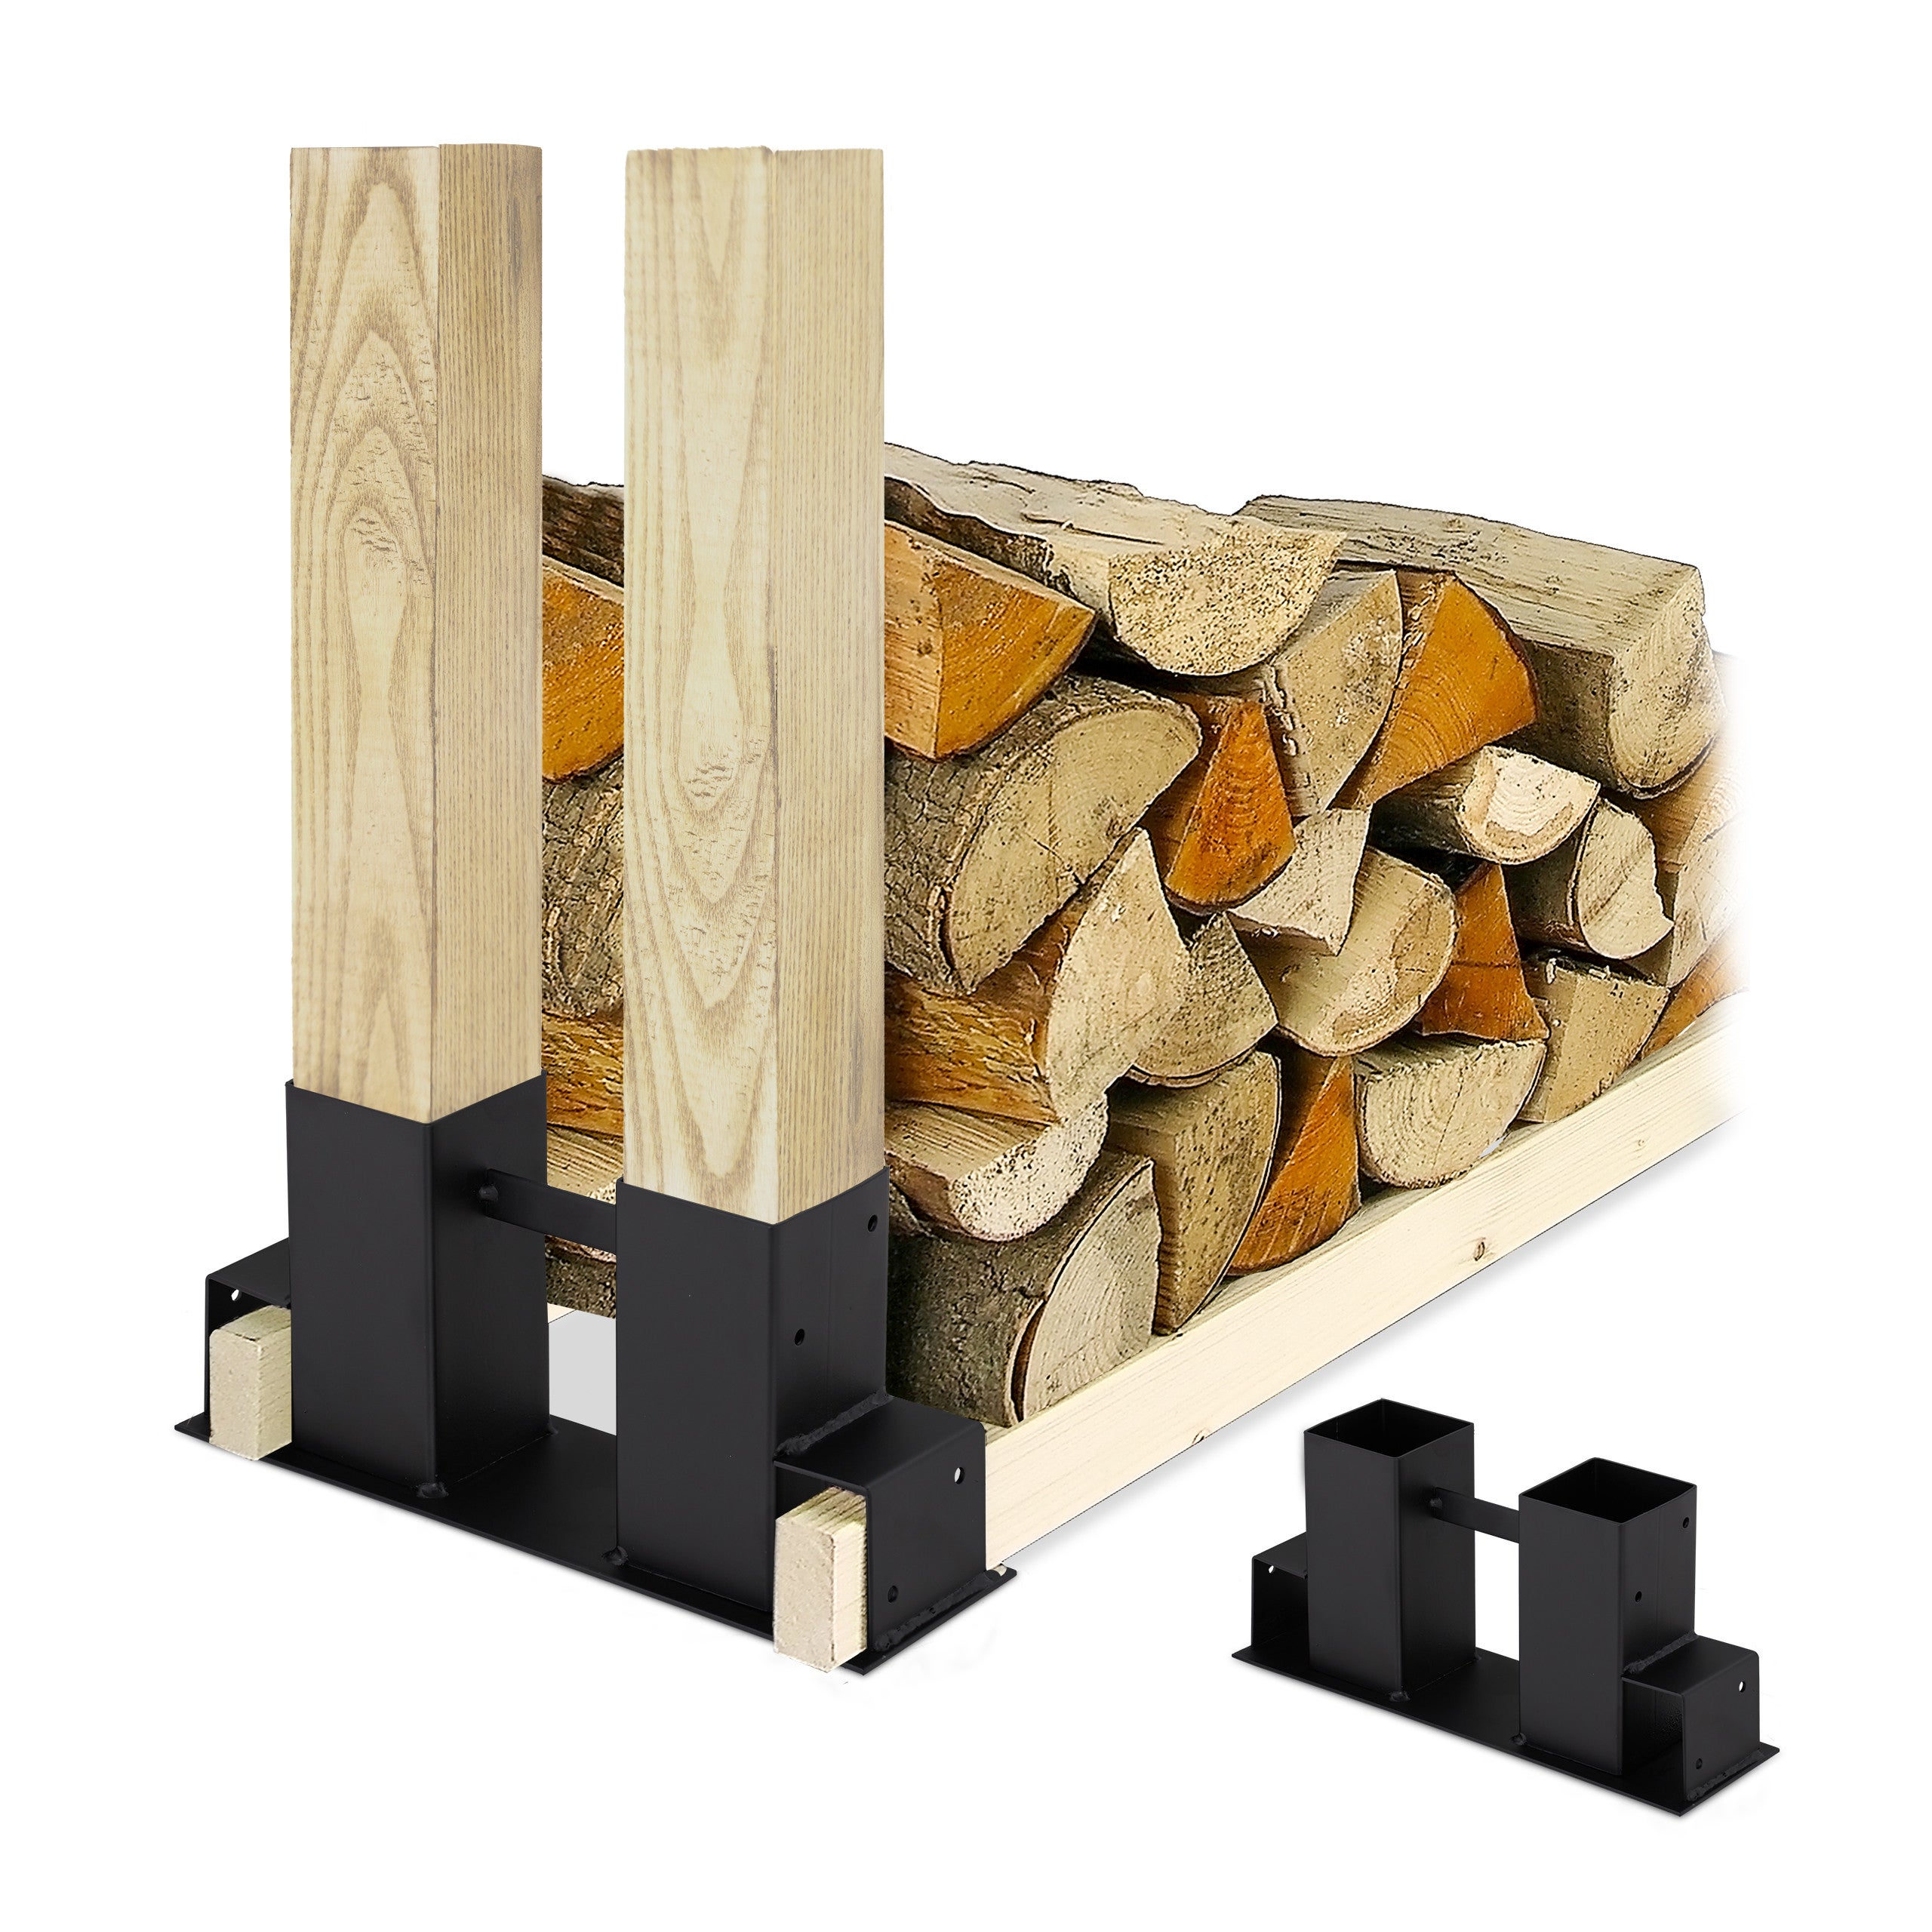 Da porta legna improvvisati a porta legna di design: #6 idee da copiare 